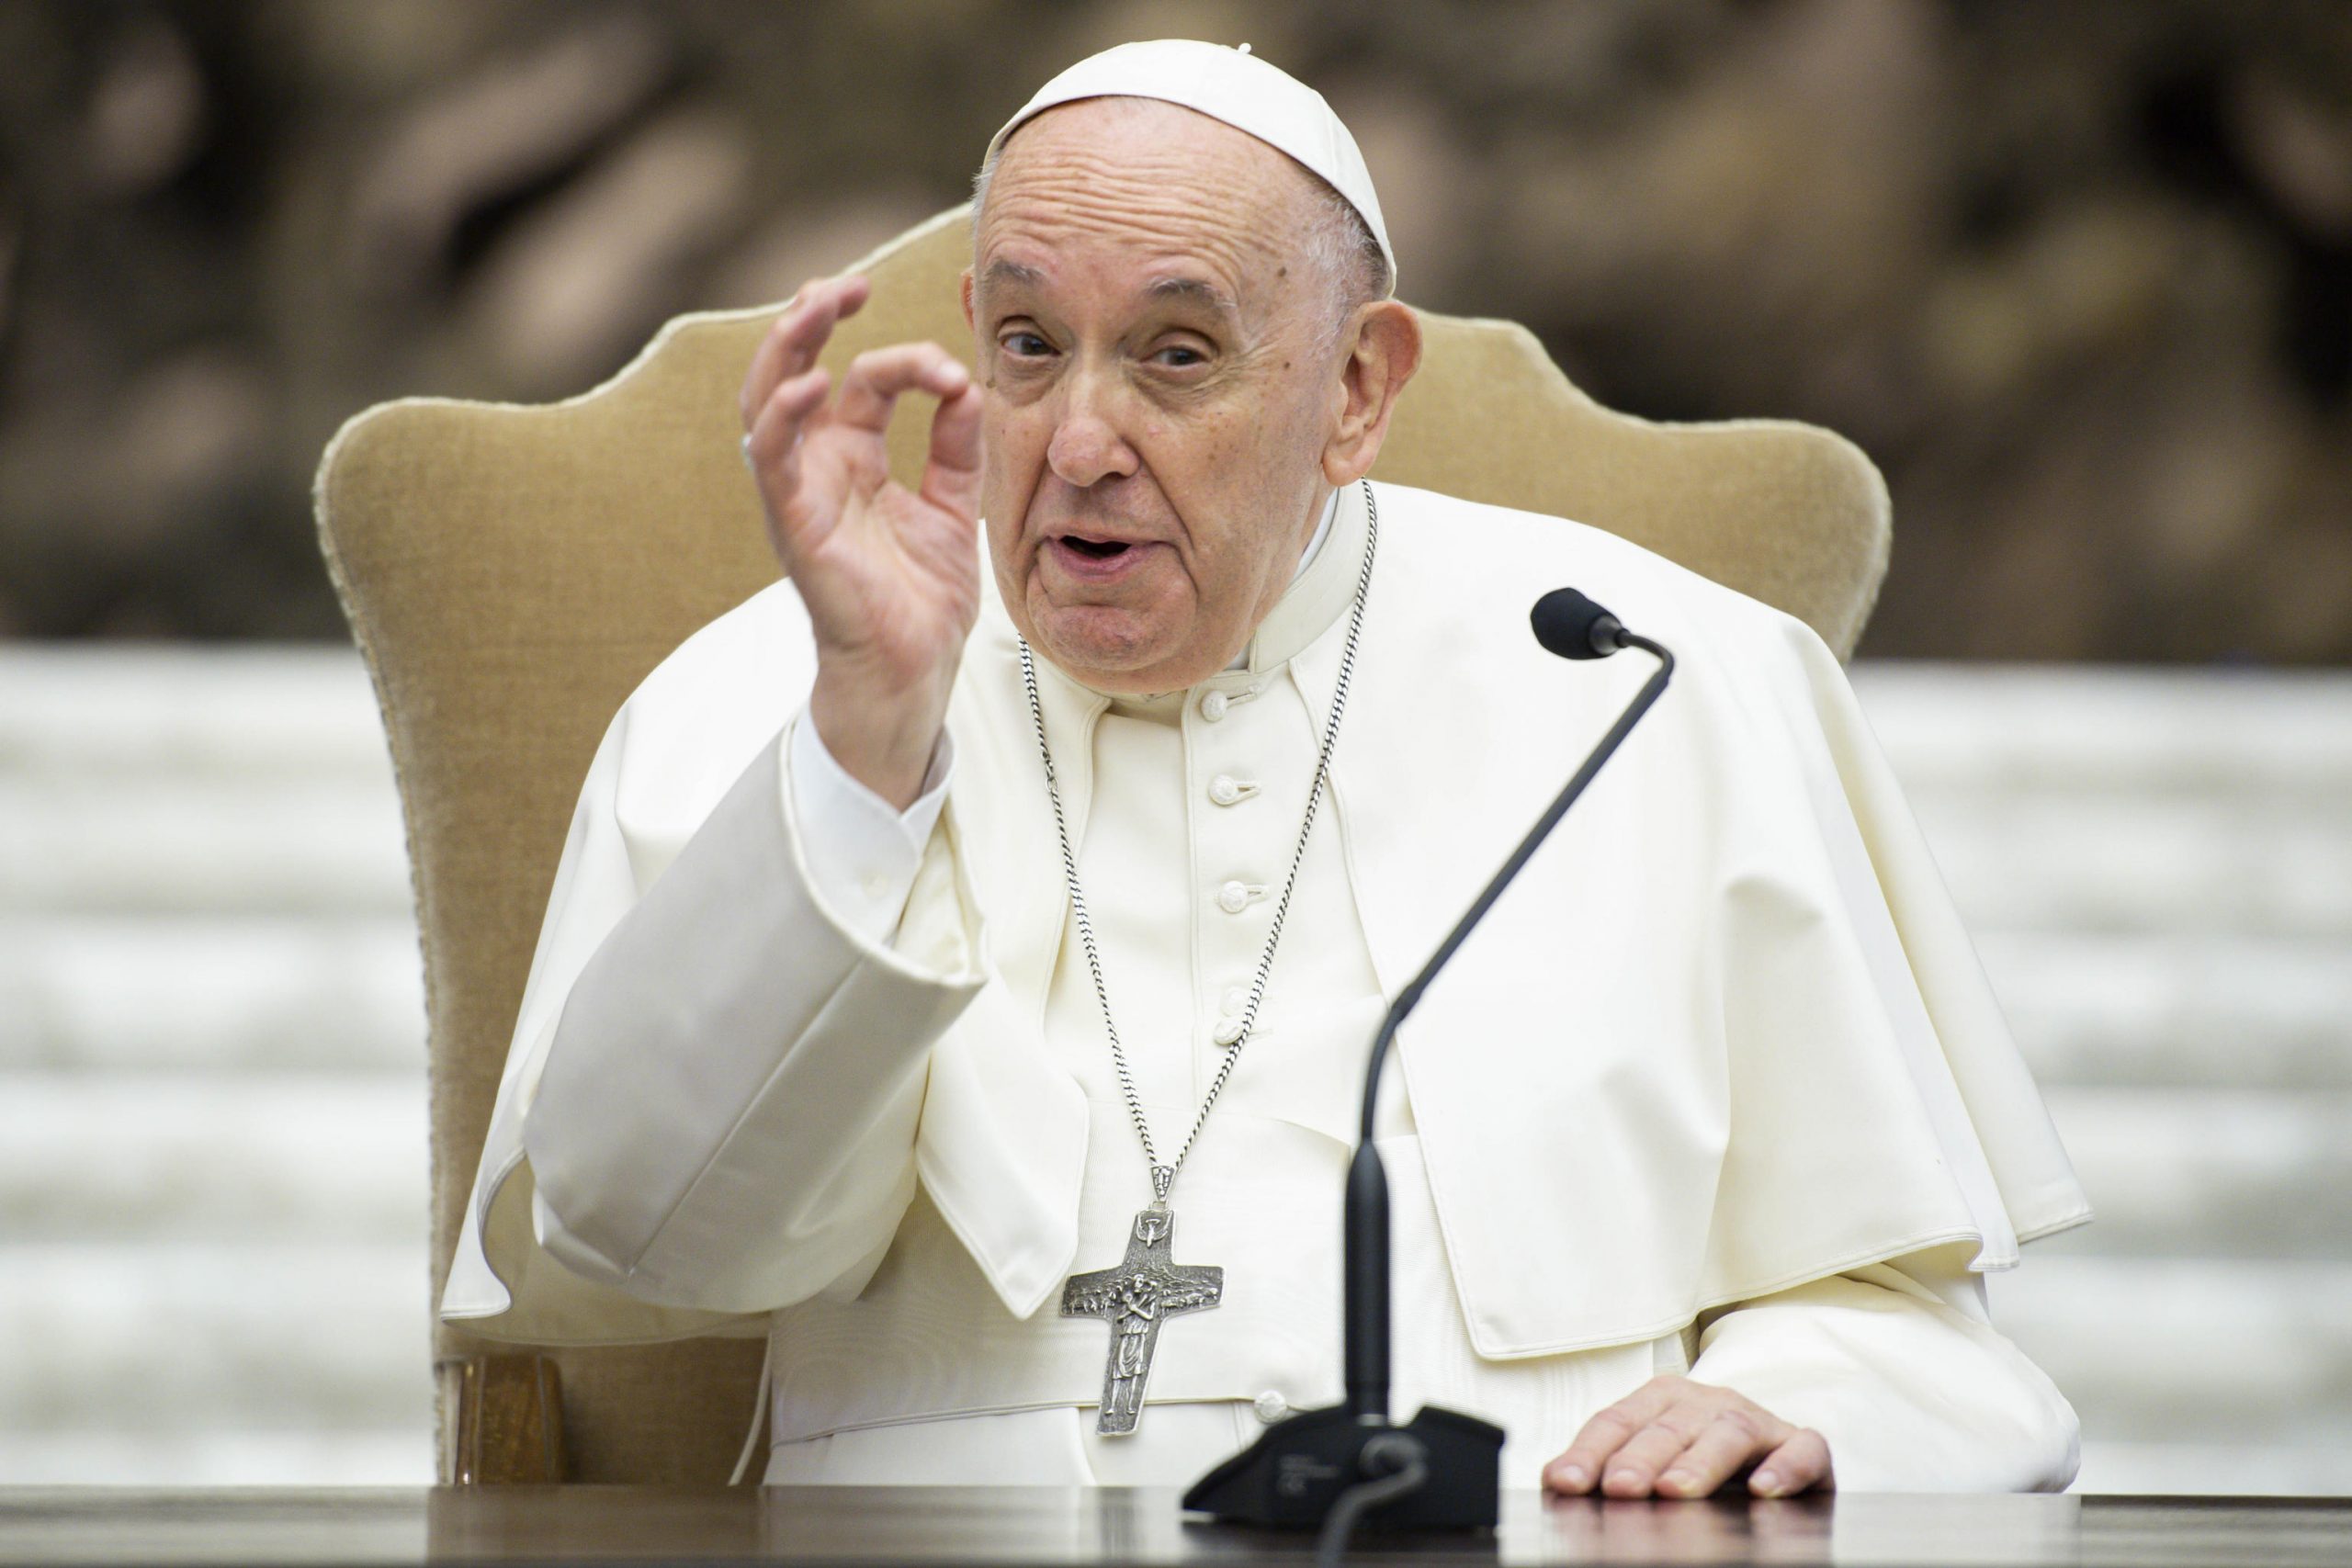 La Russia apre al Papa: per il Cremlino è positiva l'apertura di Macron al Vaticano nei negoziati